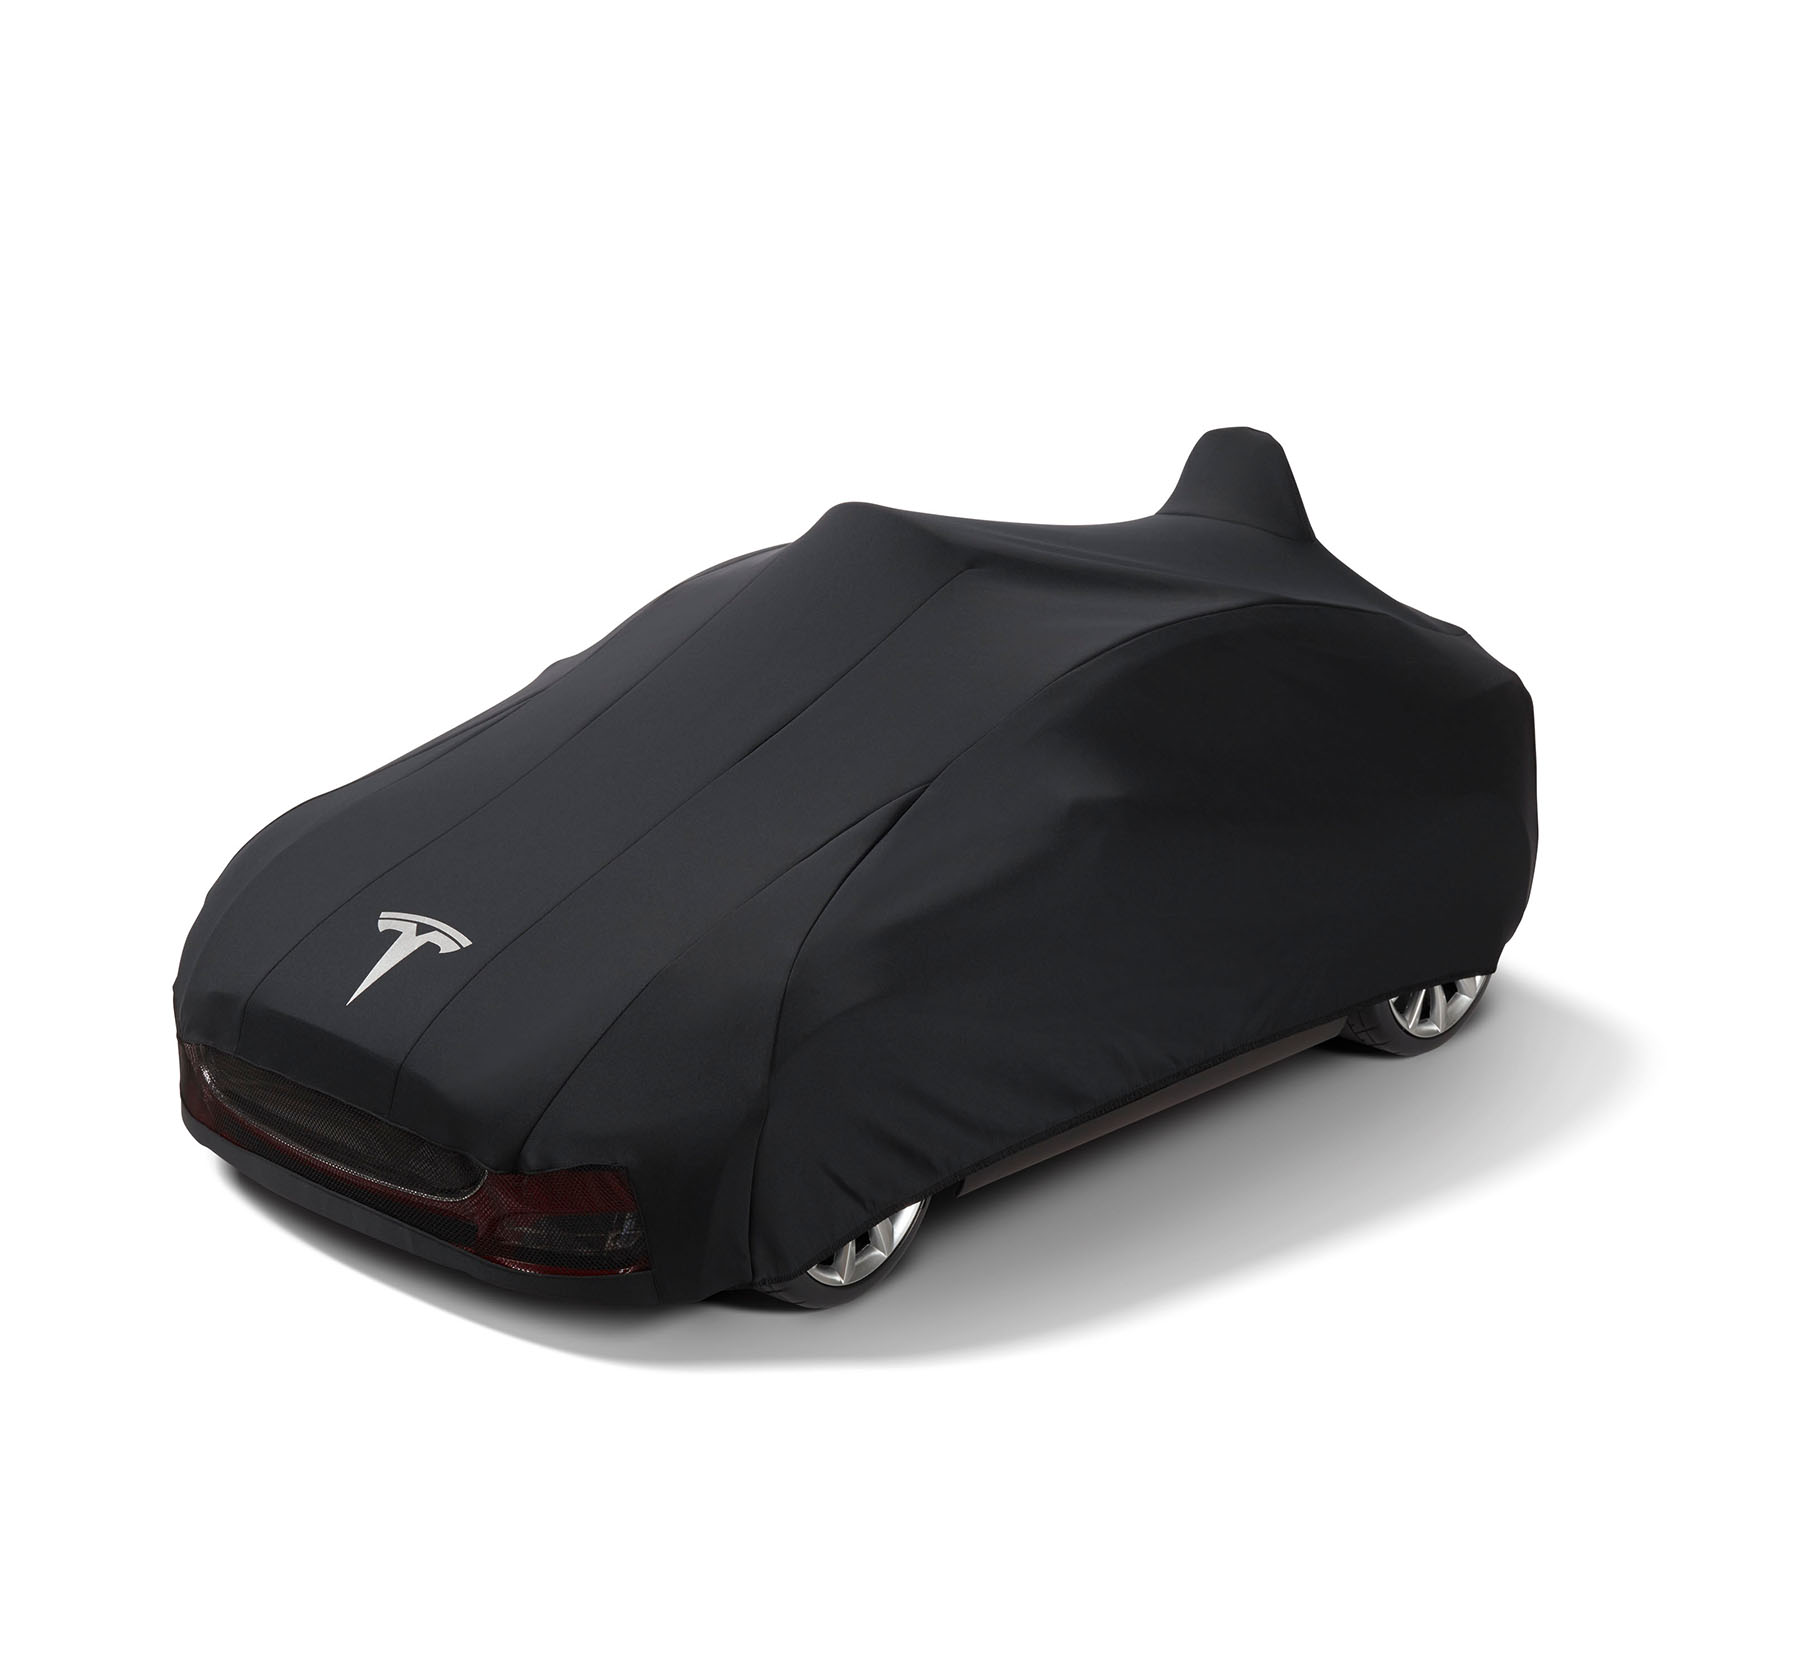 https://europe.radioflyer.com/media/catalog/product/m/i/mini-tesla-model-s-for-kids-inset-car-cover-front-model-910.jpg